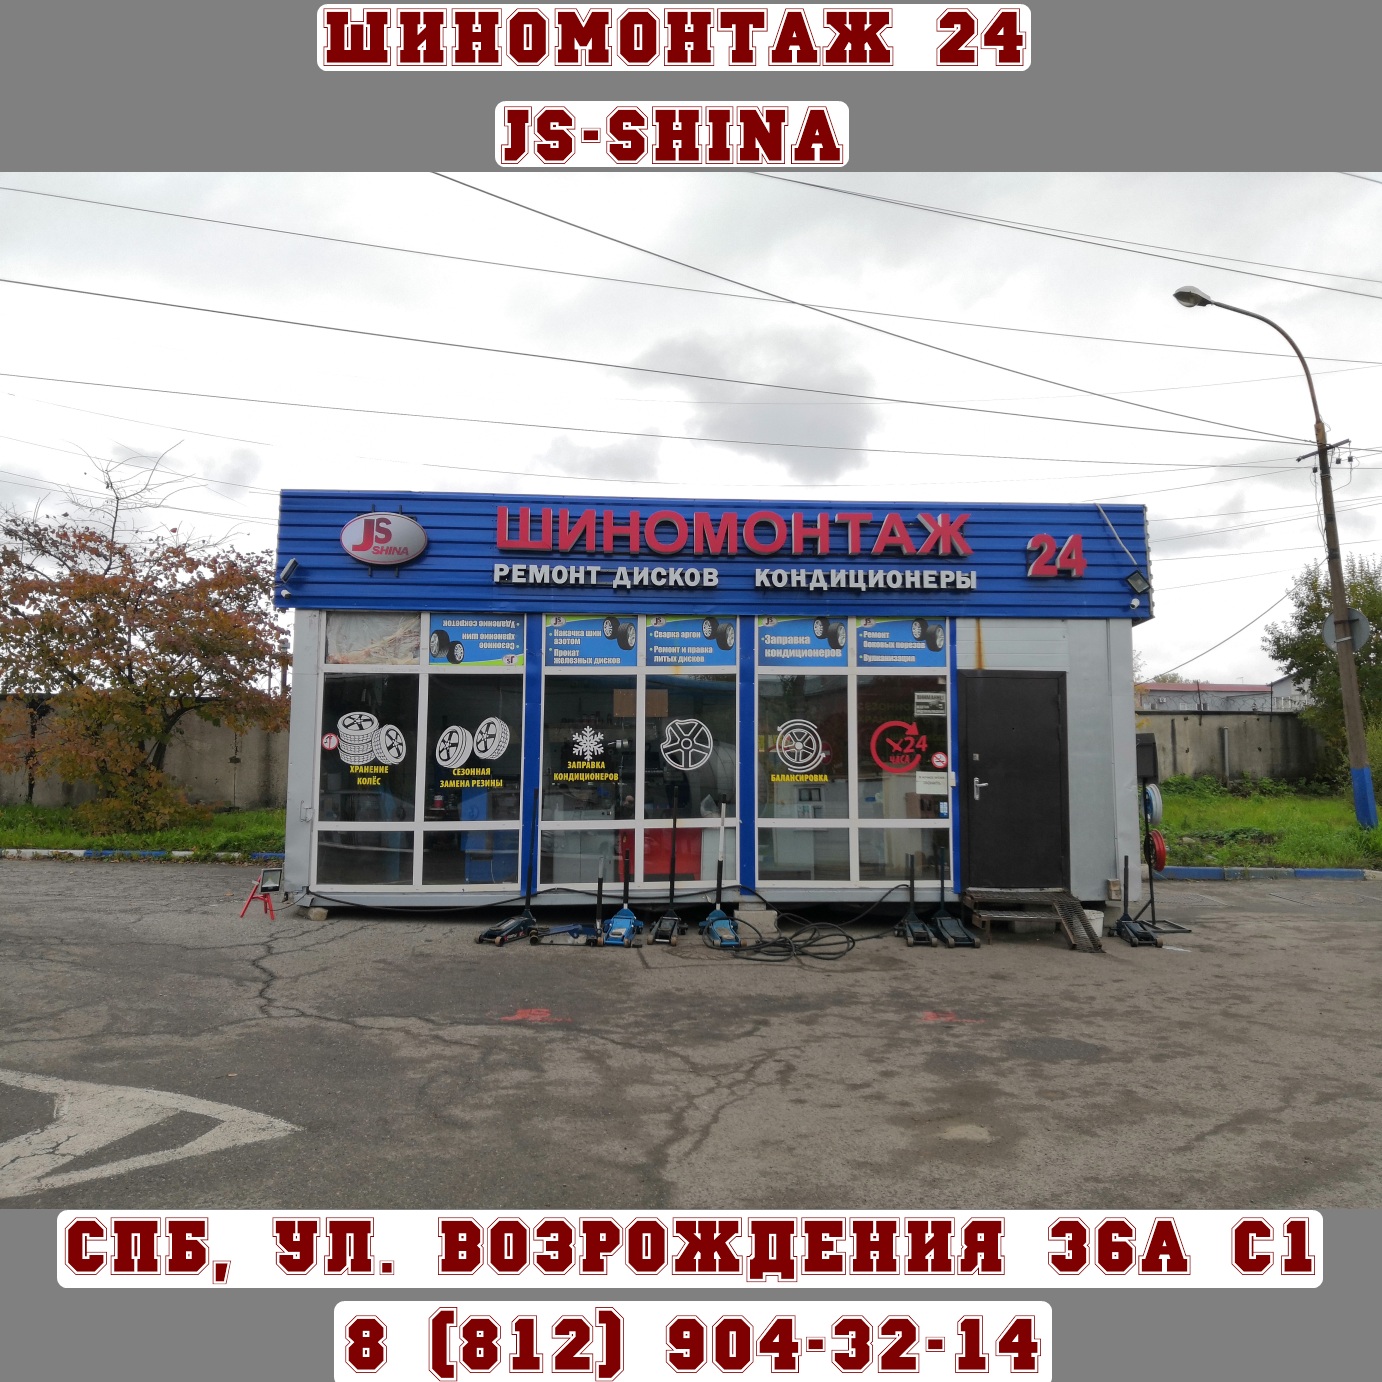 Шиномонтаж 24 часа в СПб, ул. Возрождения, д. 36А ст. 1 ремонт дисков